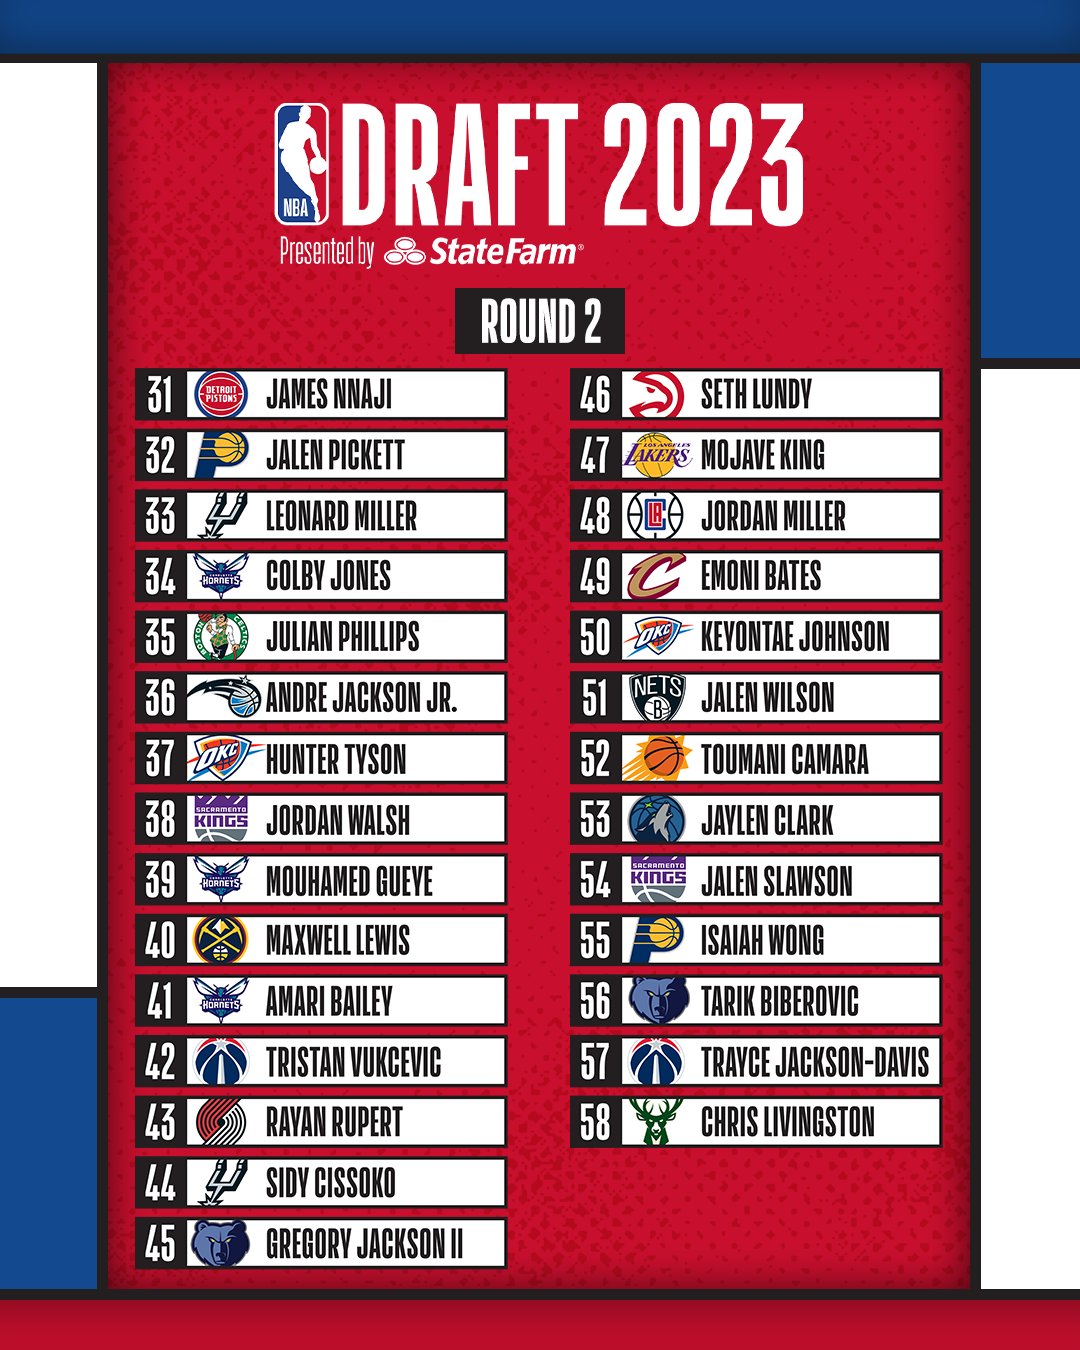 2nd round draft